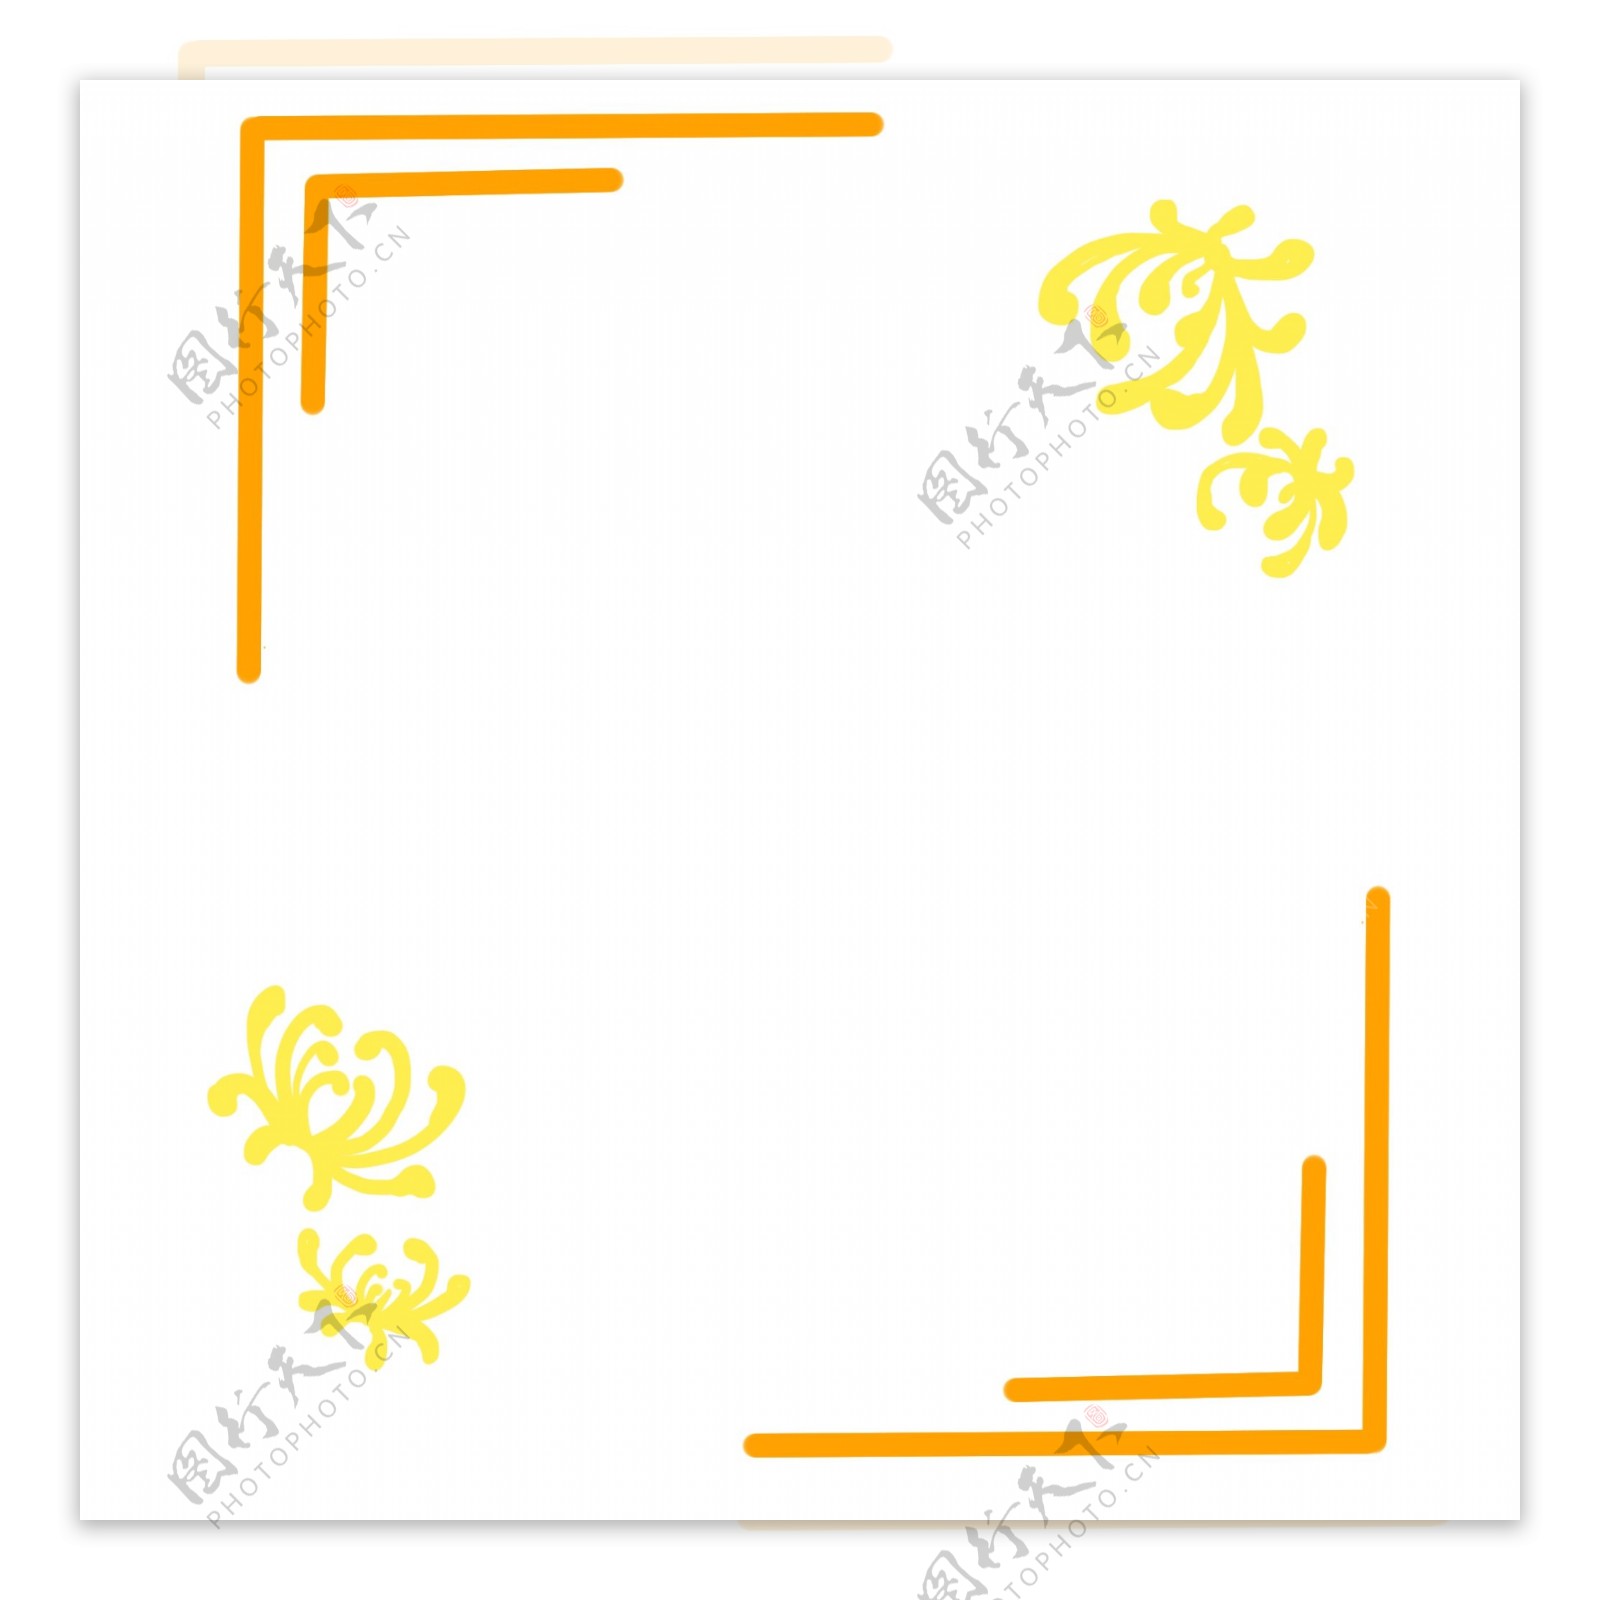 重阳节菊花装饰边框插画